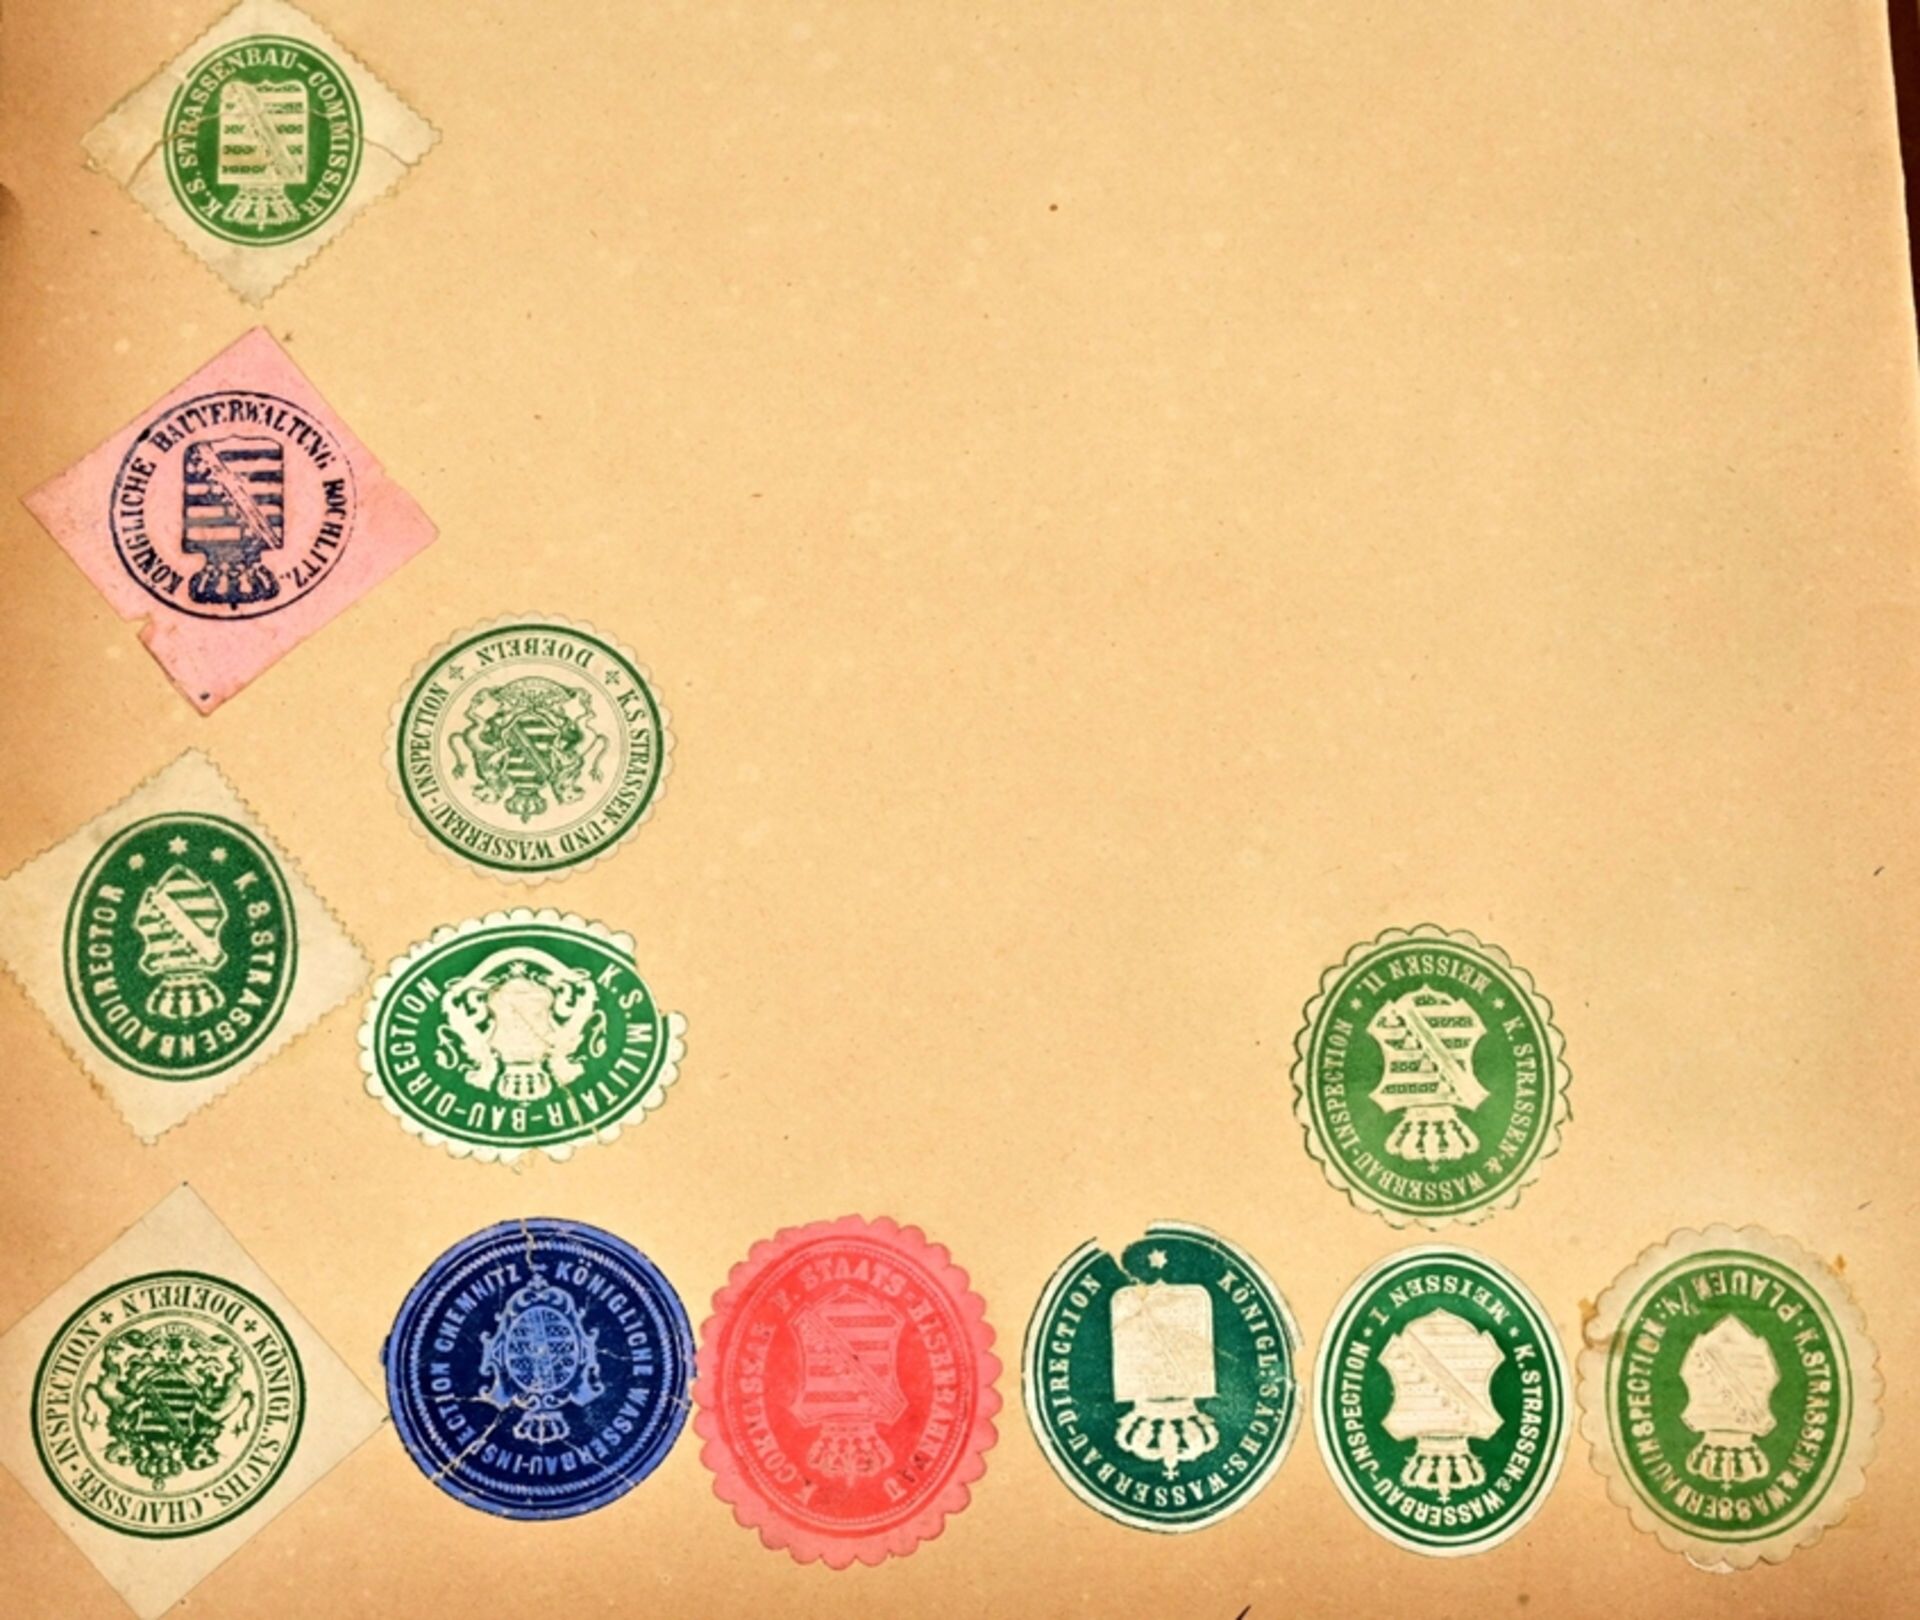 Umfangreiche Siegelmarken - Sammlung überwiegend Sachsen betreffend, lose Blätter mit Papiersiegels - Bild 8 aus 8